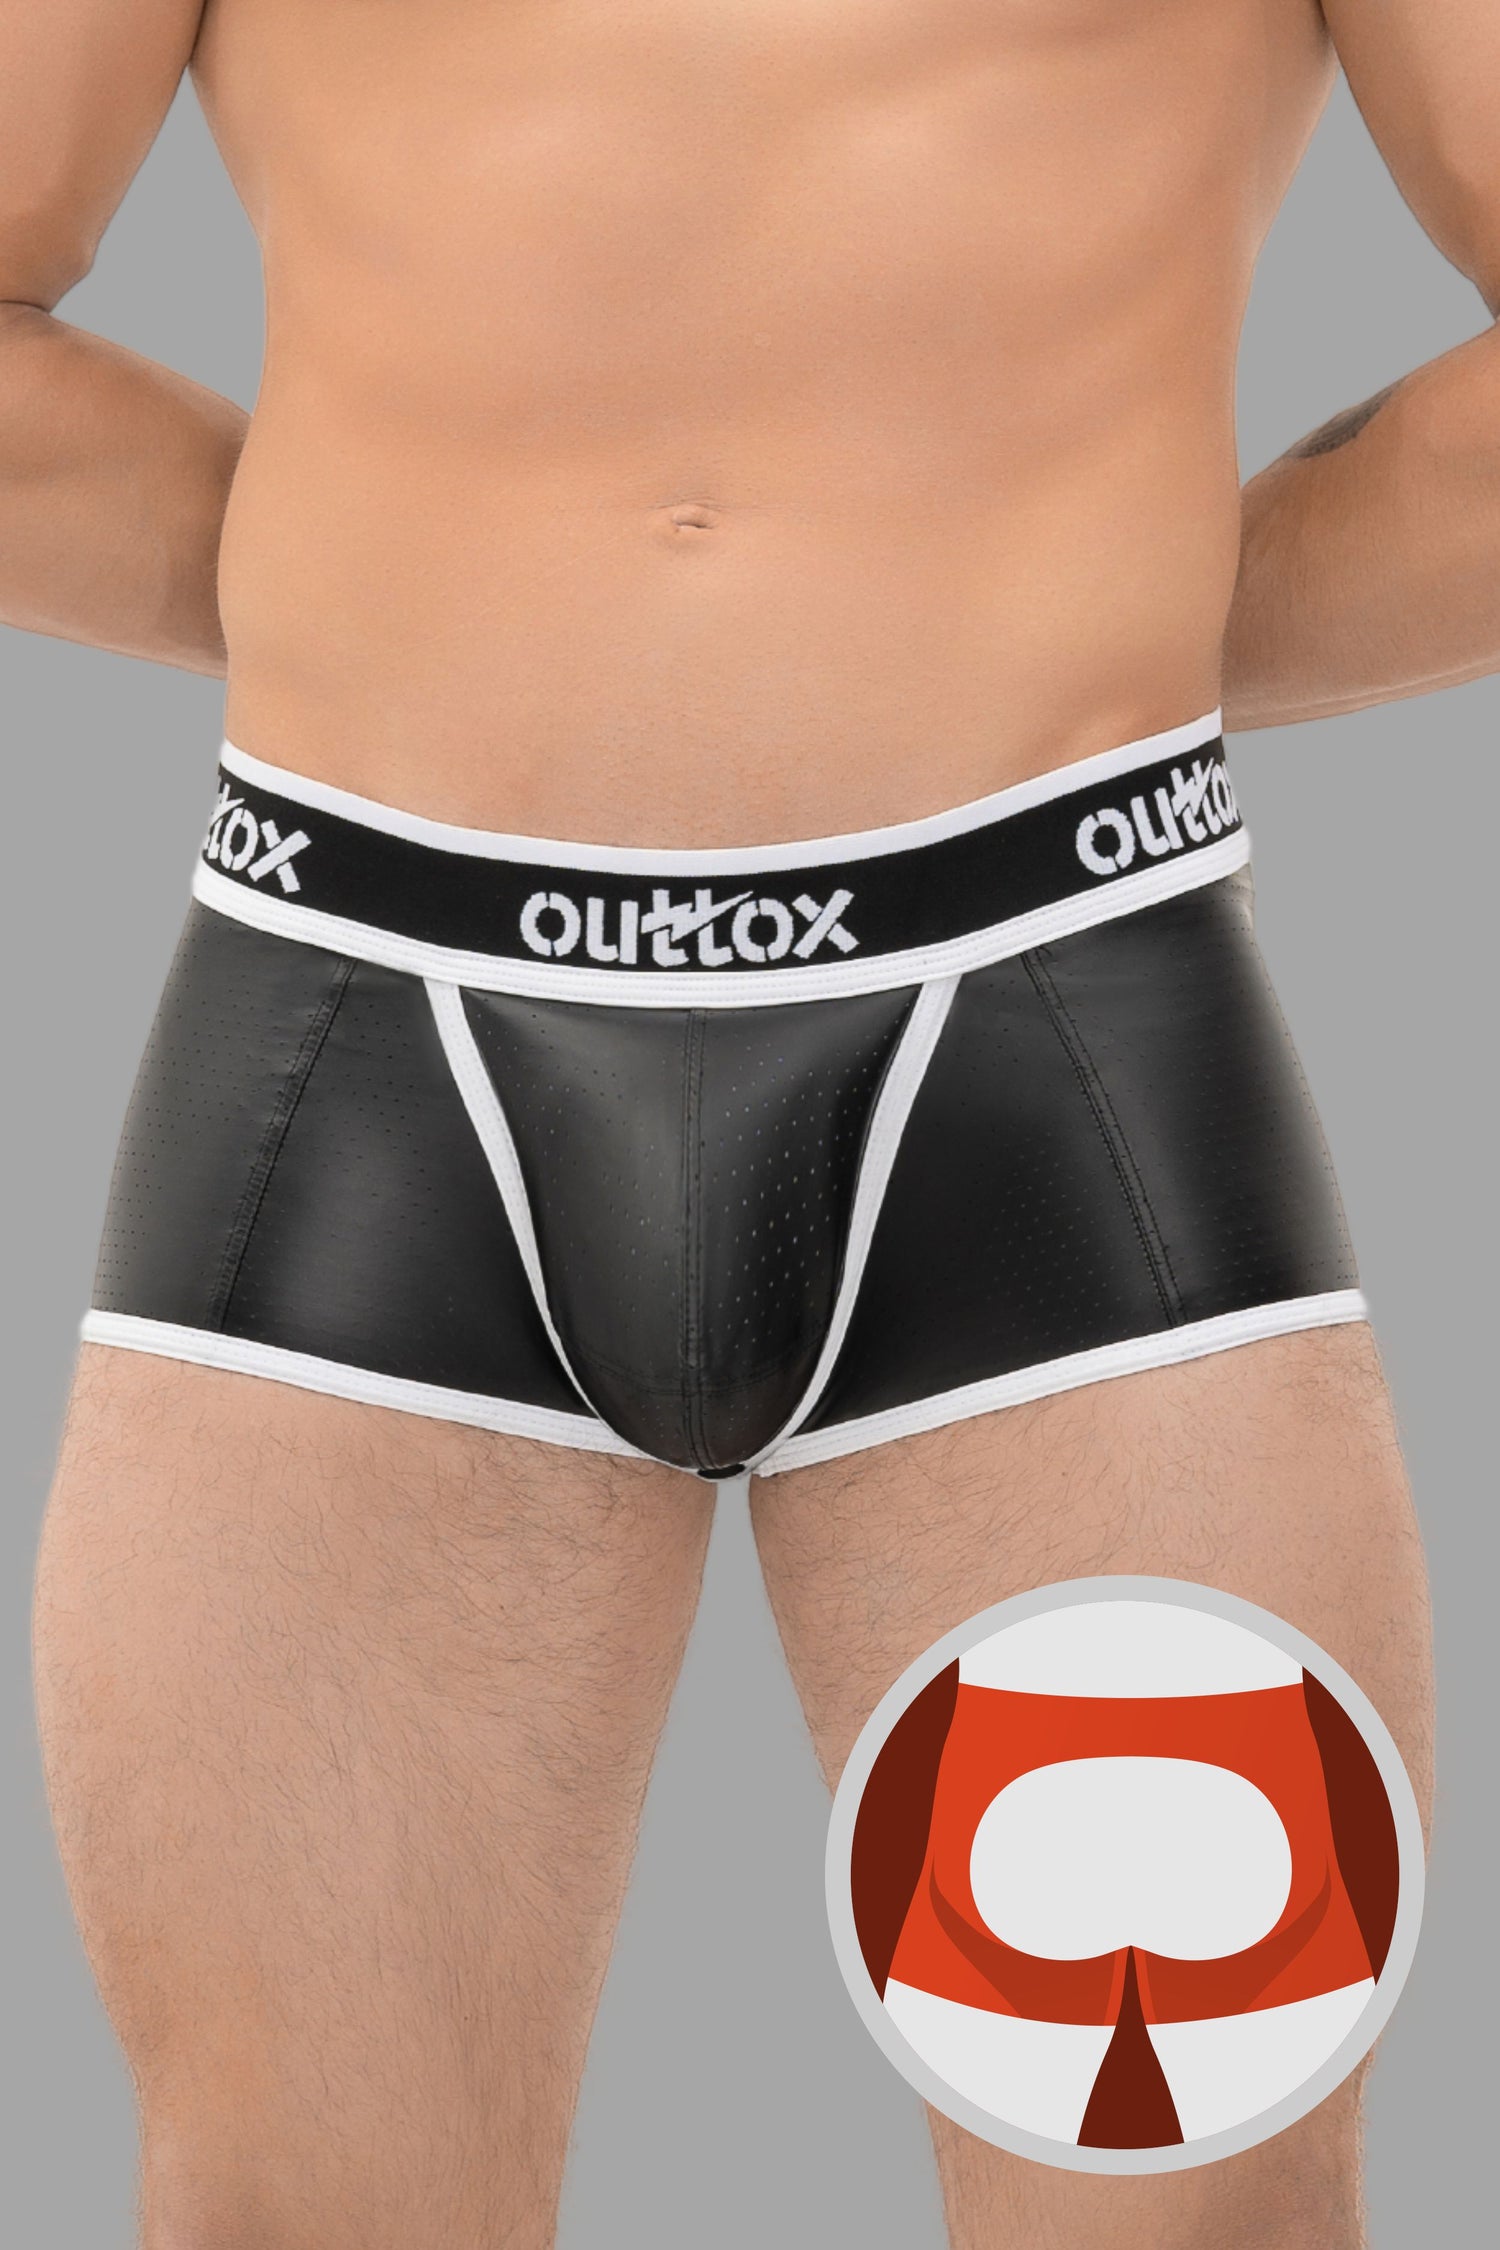 Outtox. Shorts mit offenem Rücken und Druckknopf-Codpiece. Schwarz+Weiß